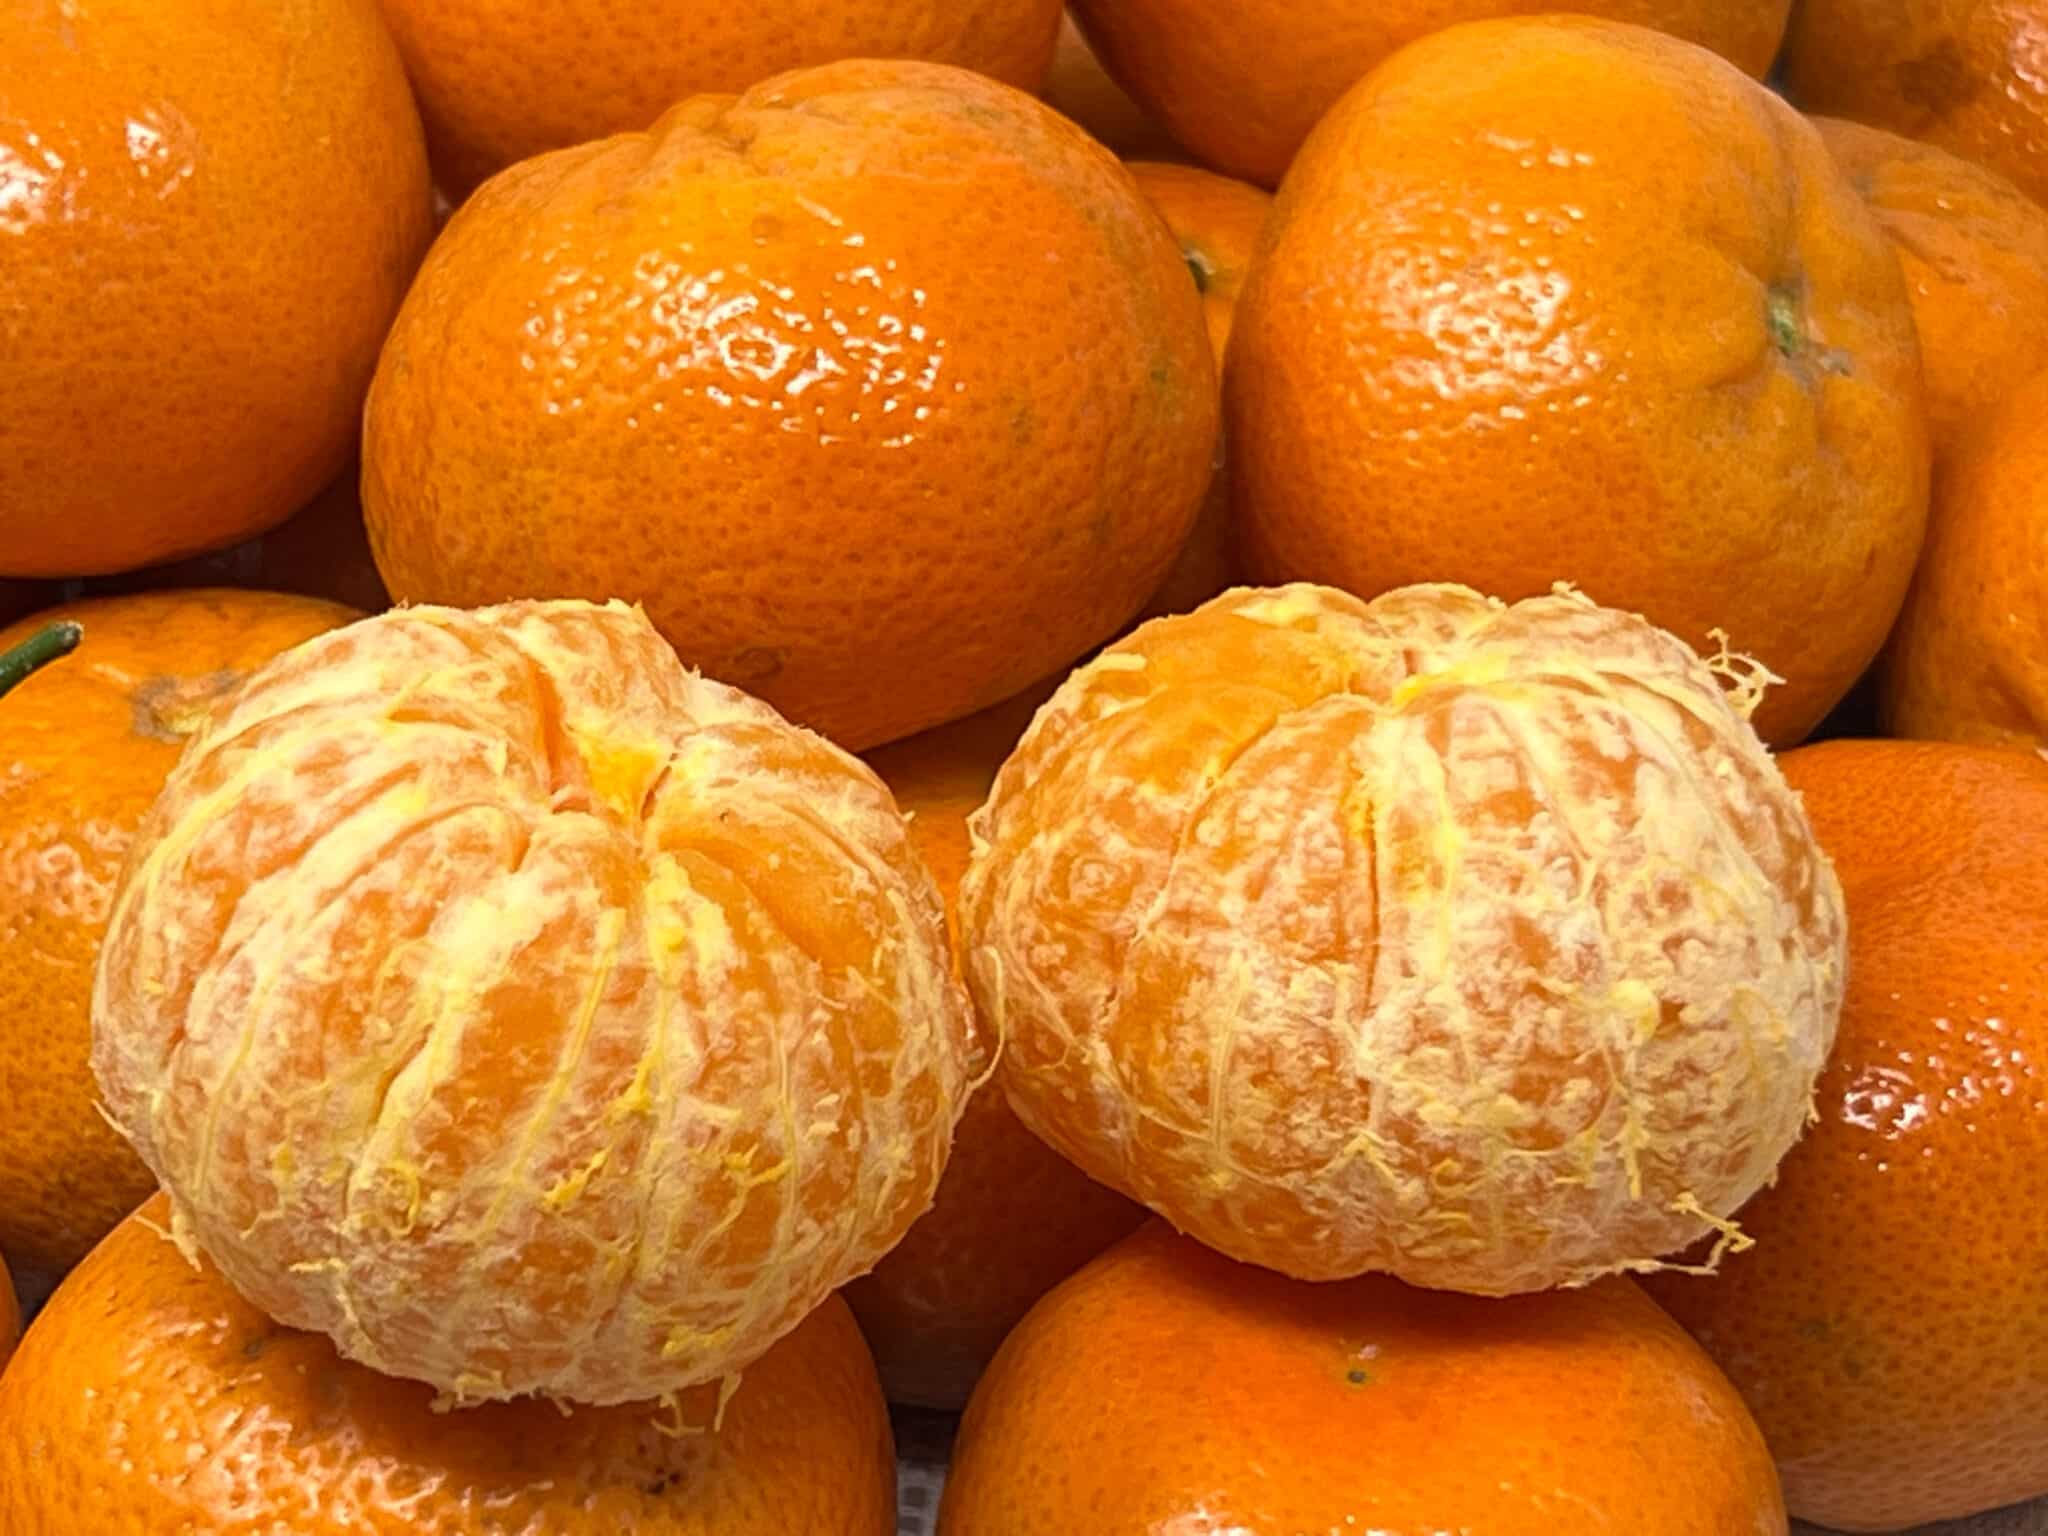 Get Sweet Satsuma Mandarin Oranges Delivered